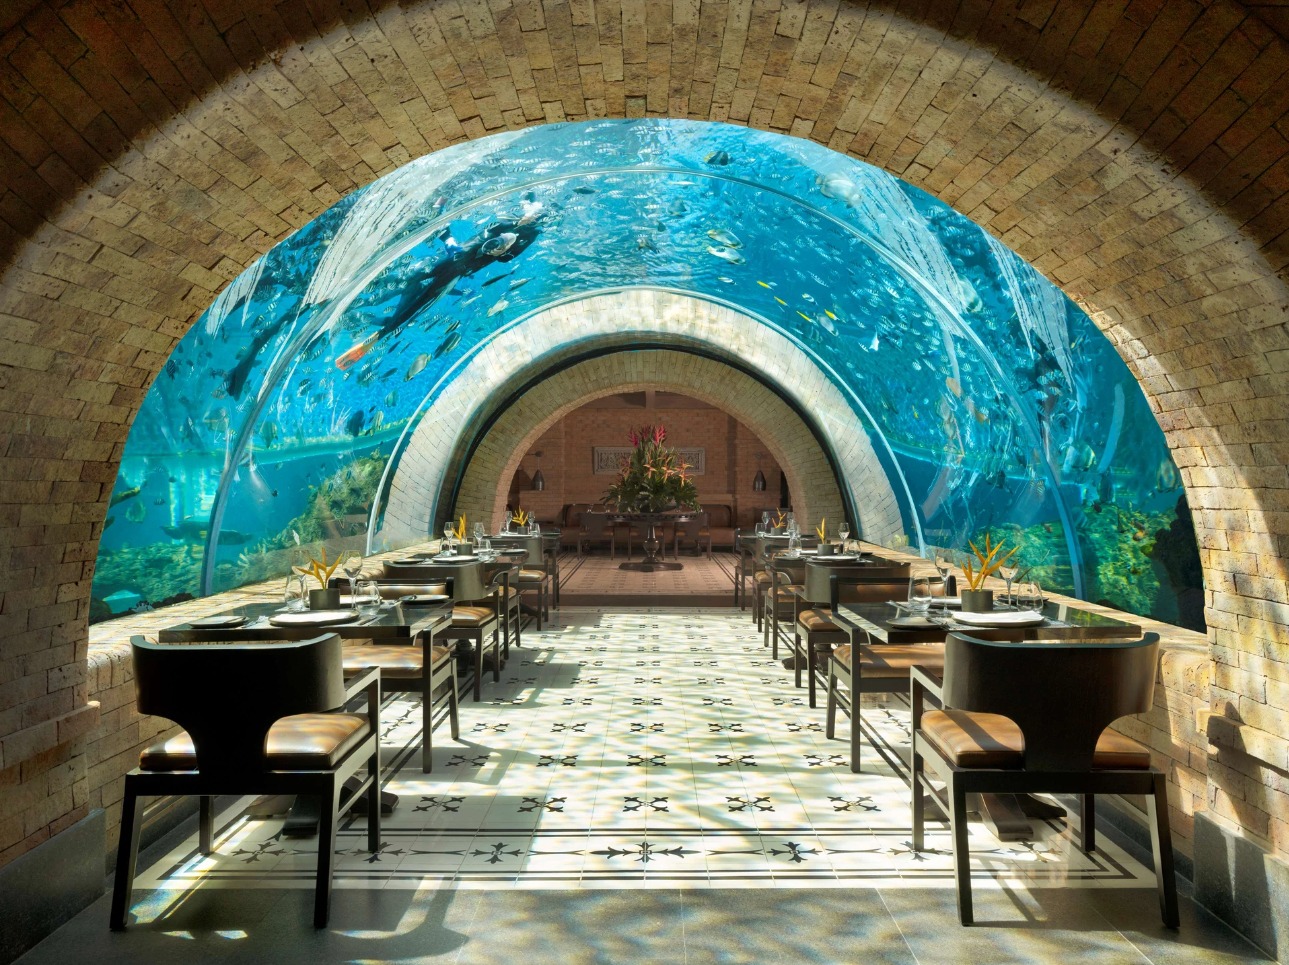 峇里島阿普爾瓦凱賓斯基飯店 Koral 海底餐廳用餐體驗